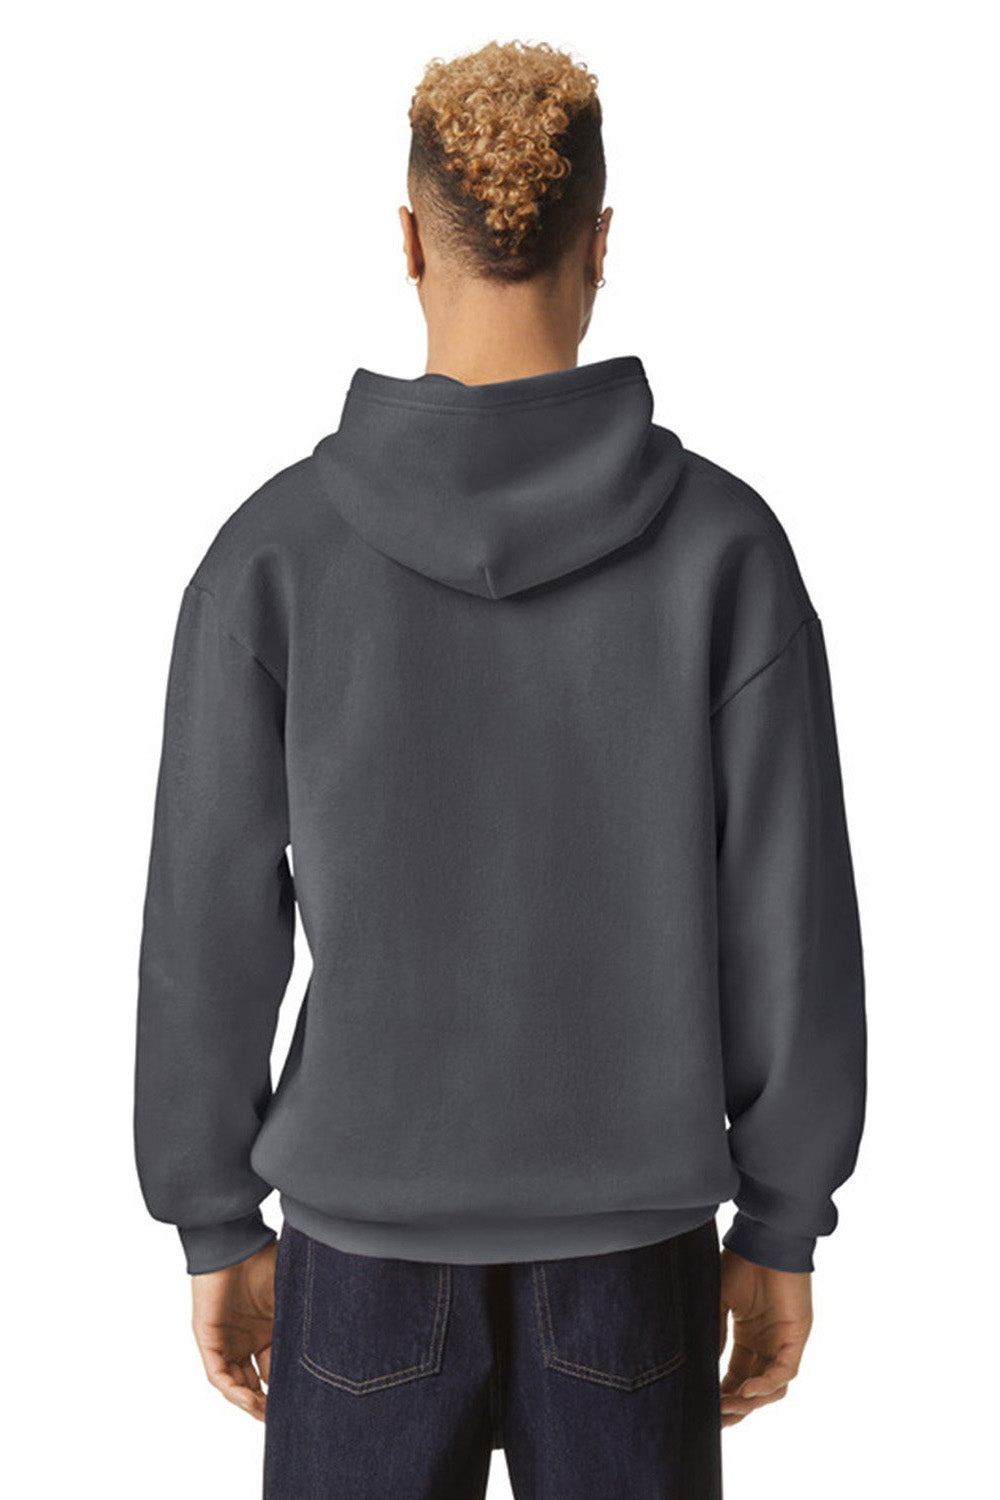 American Apparel RF498 Mens ReFlex Fleece Hooded Sweatshirt Hoodie Asphalt Grey Model Back